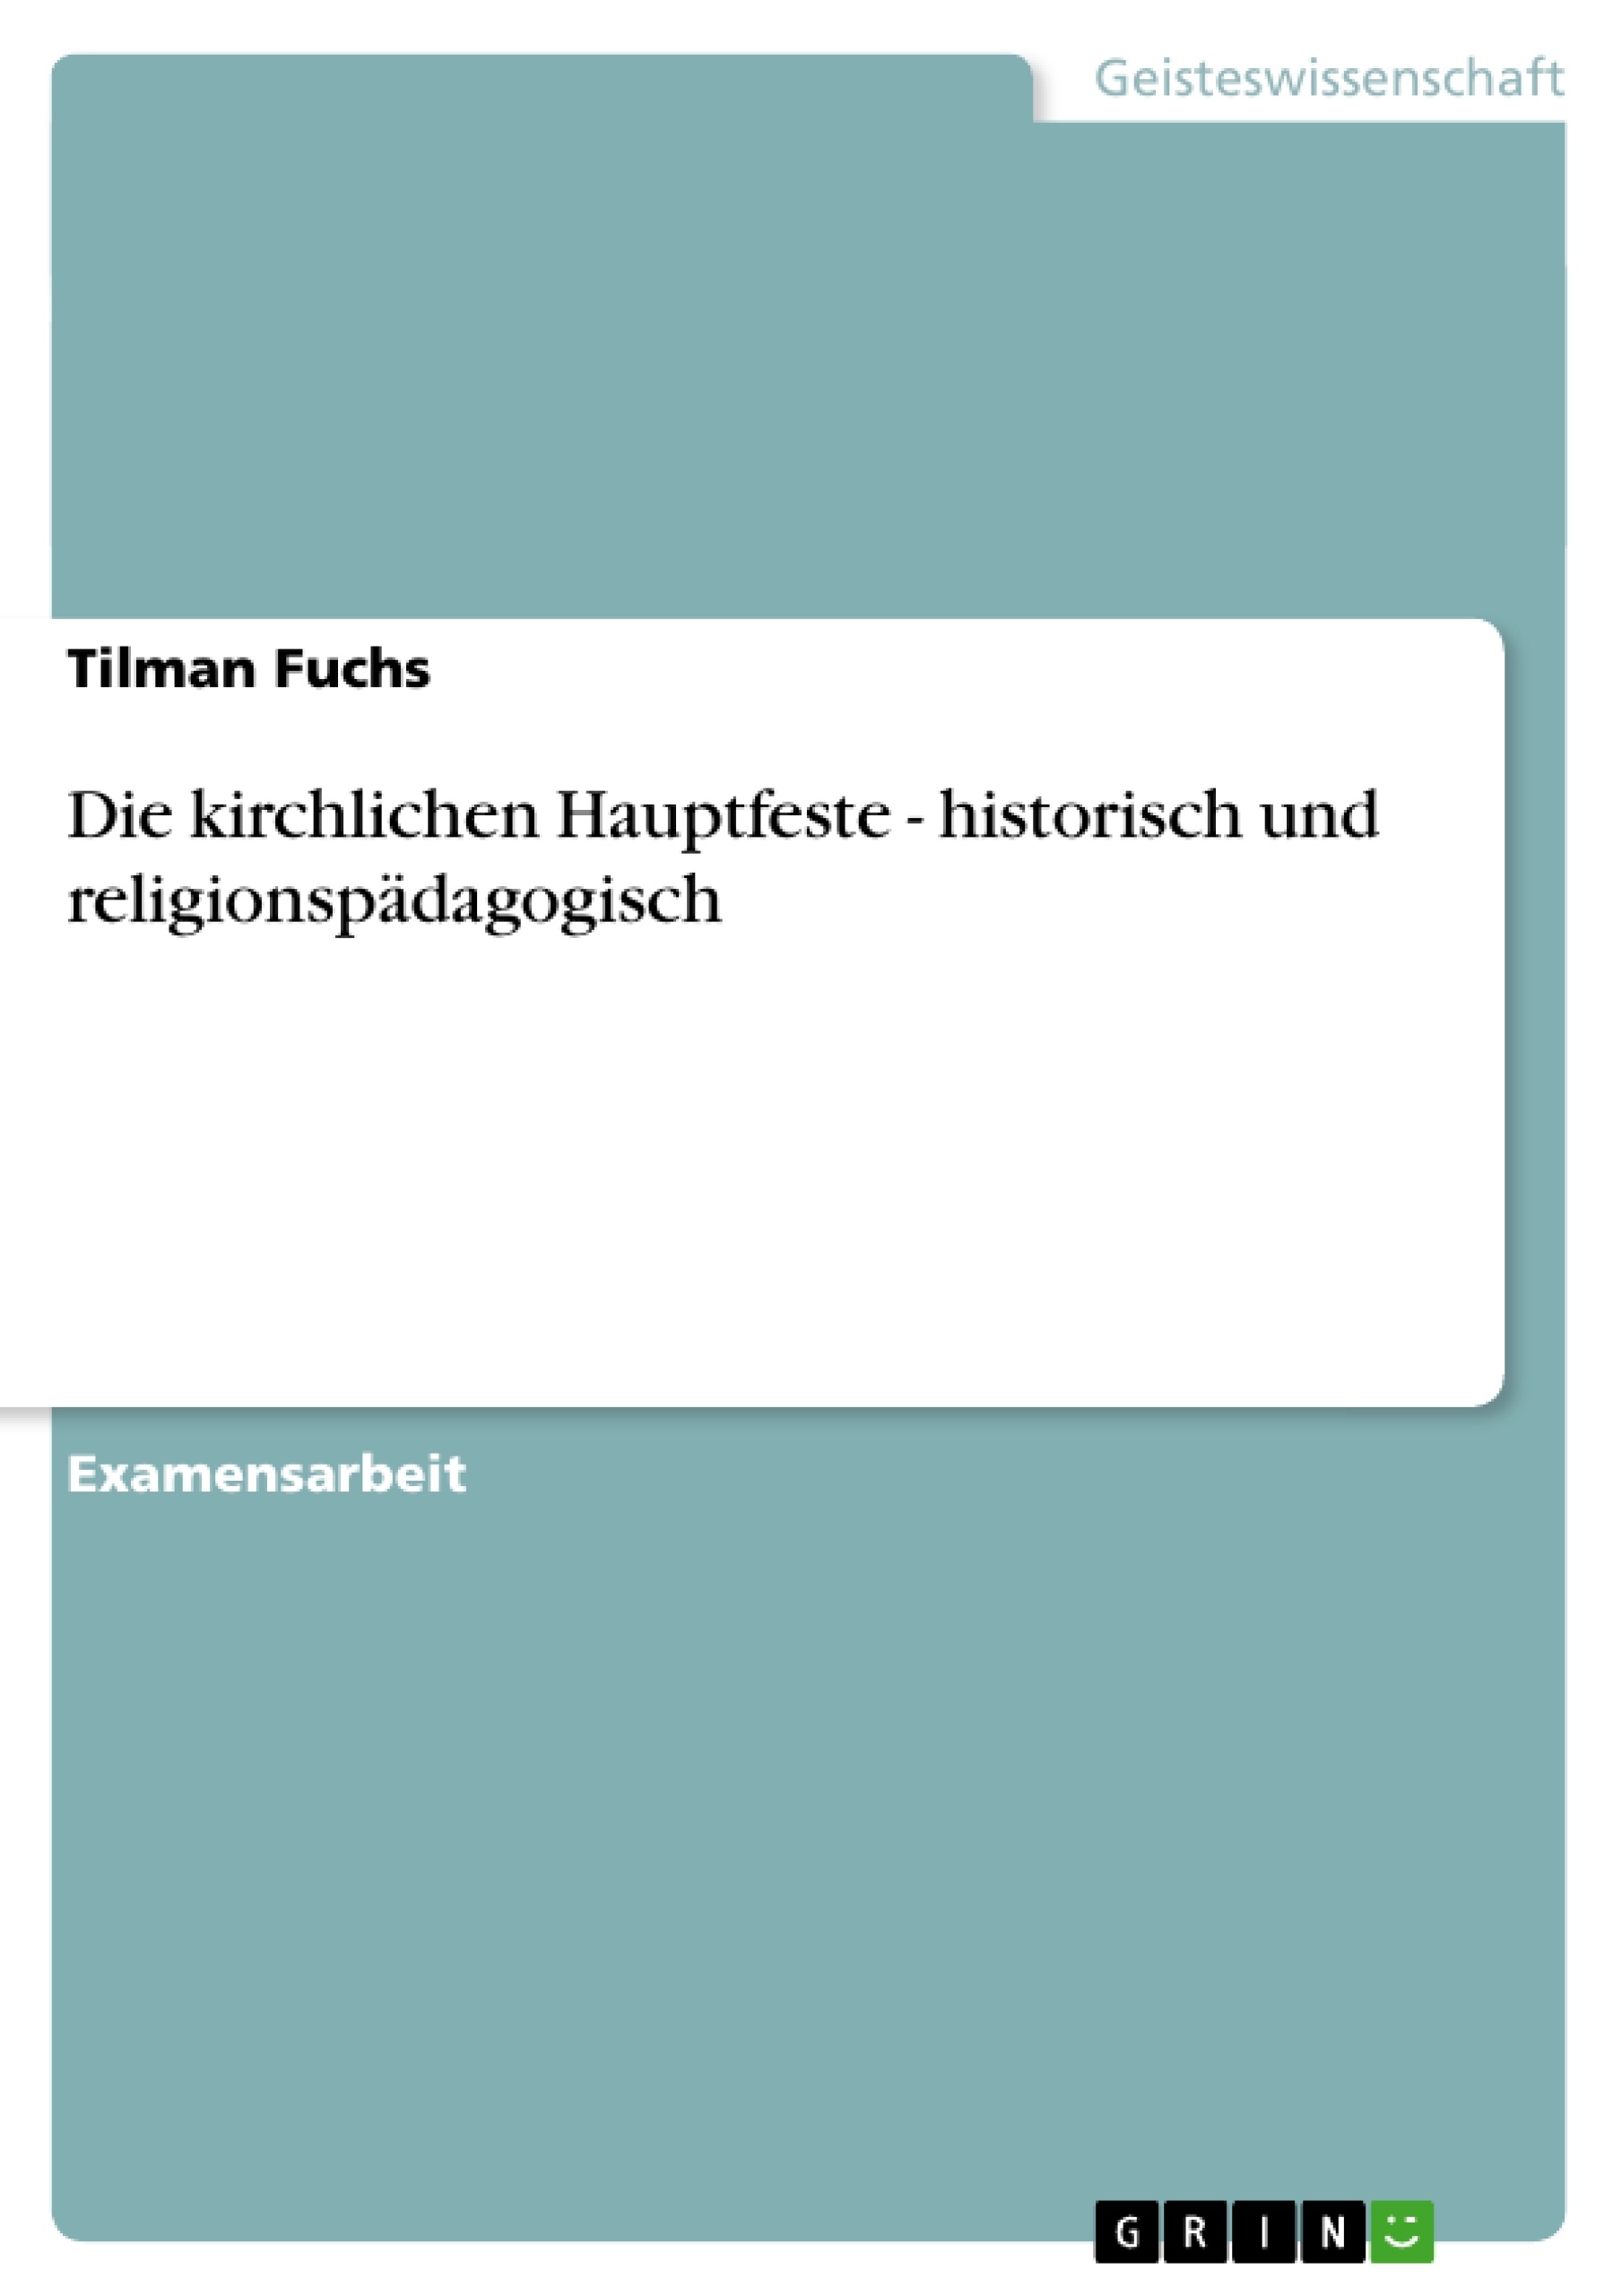 Título: Die kirchlichen Hauptfeste - historisch und religionspädagogisch